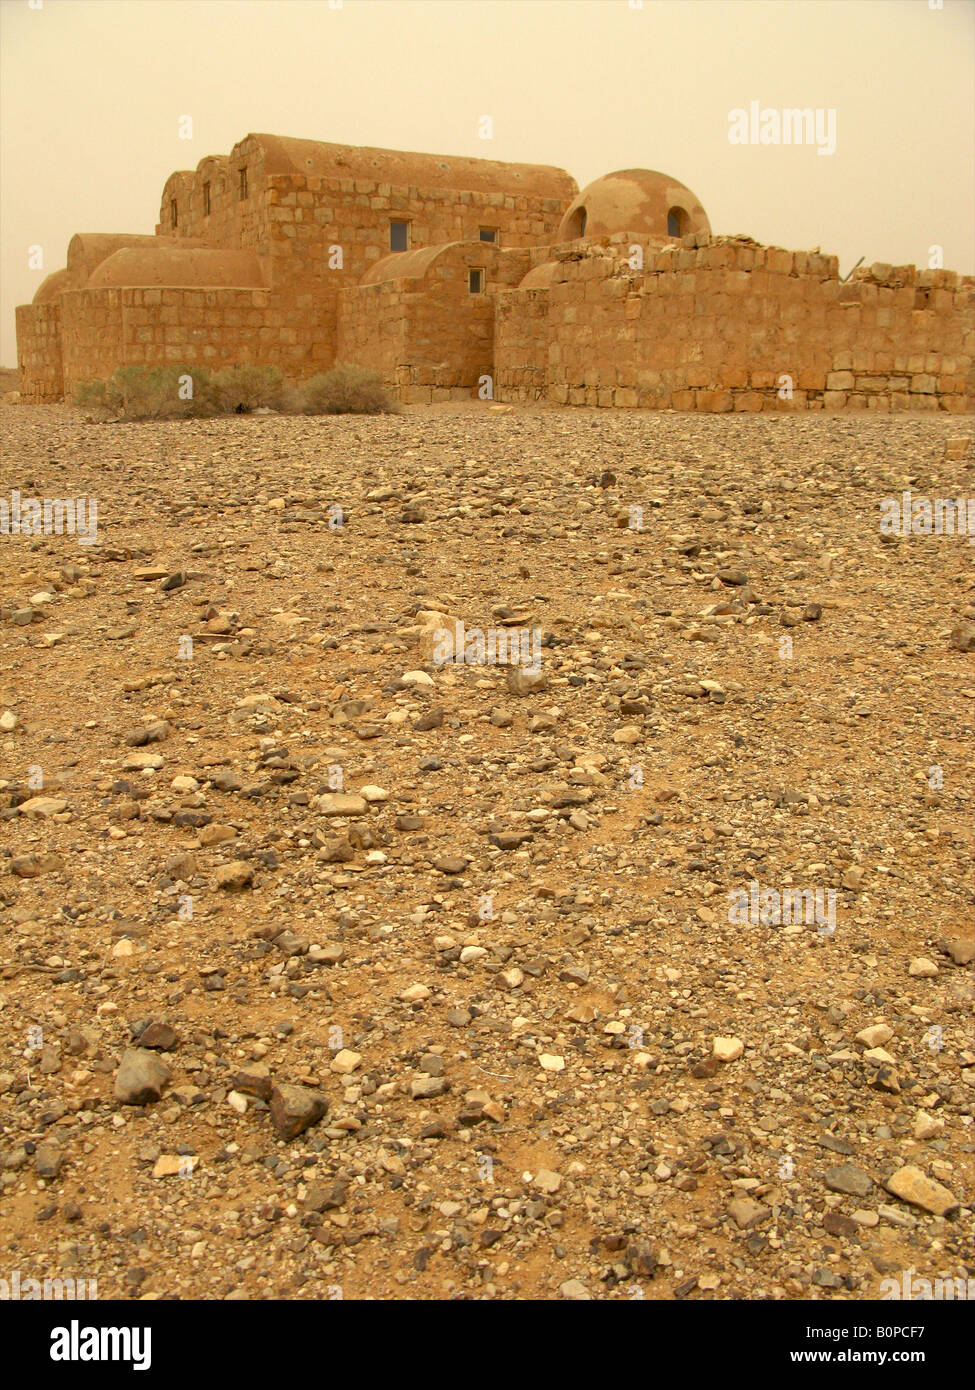 Qusayr Amra château du désert, UNESCO World Heritage Site, Jordanie, Moyen-Orient Banque D'Images